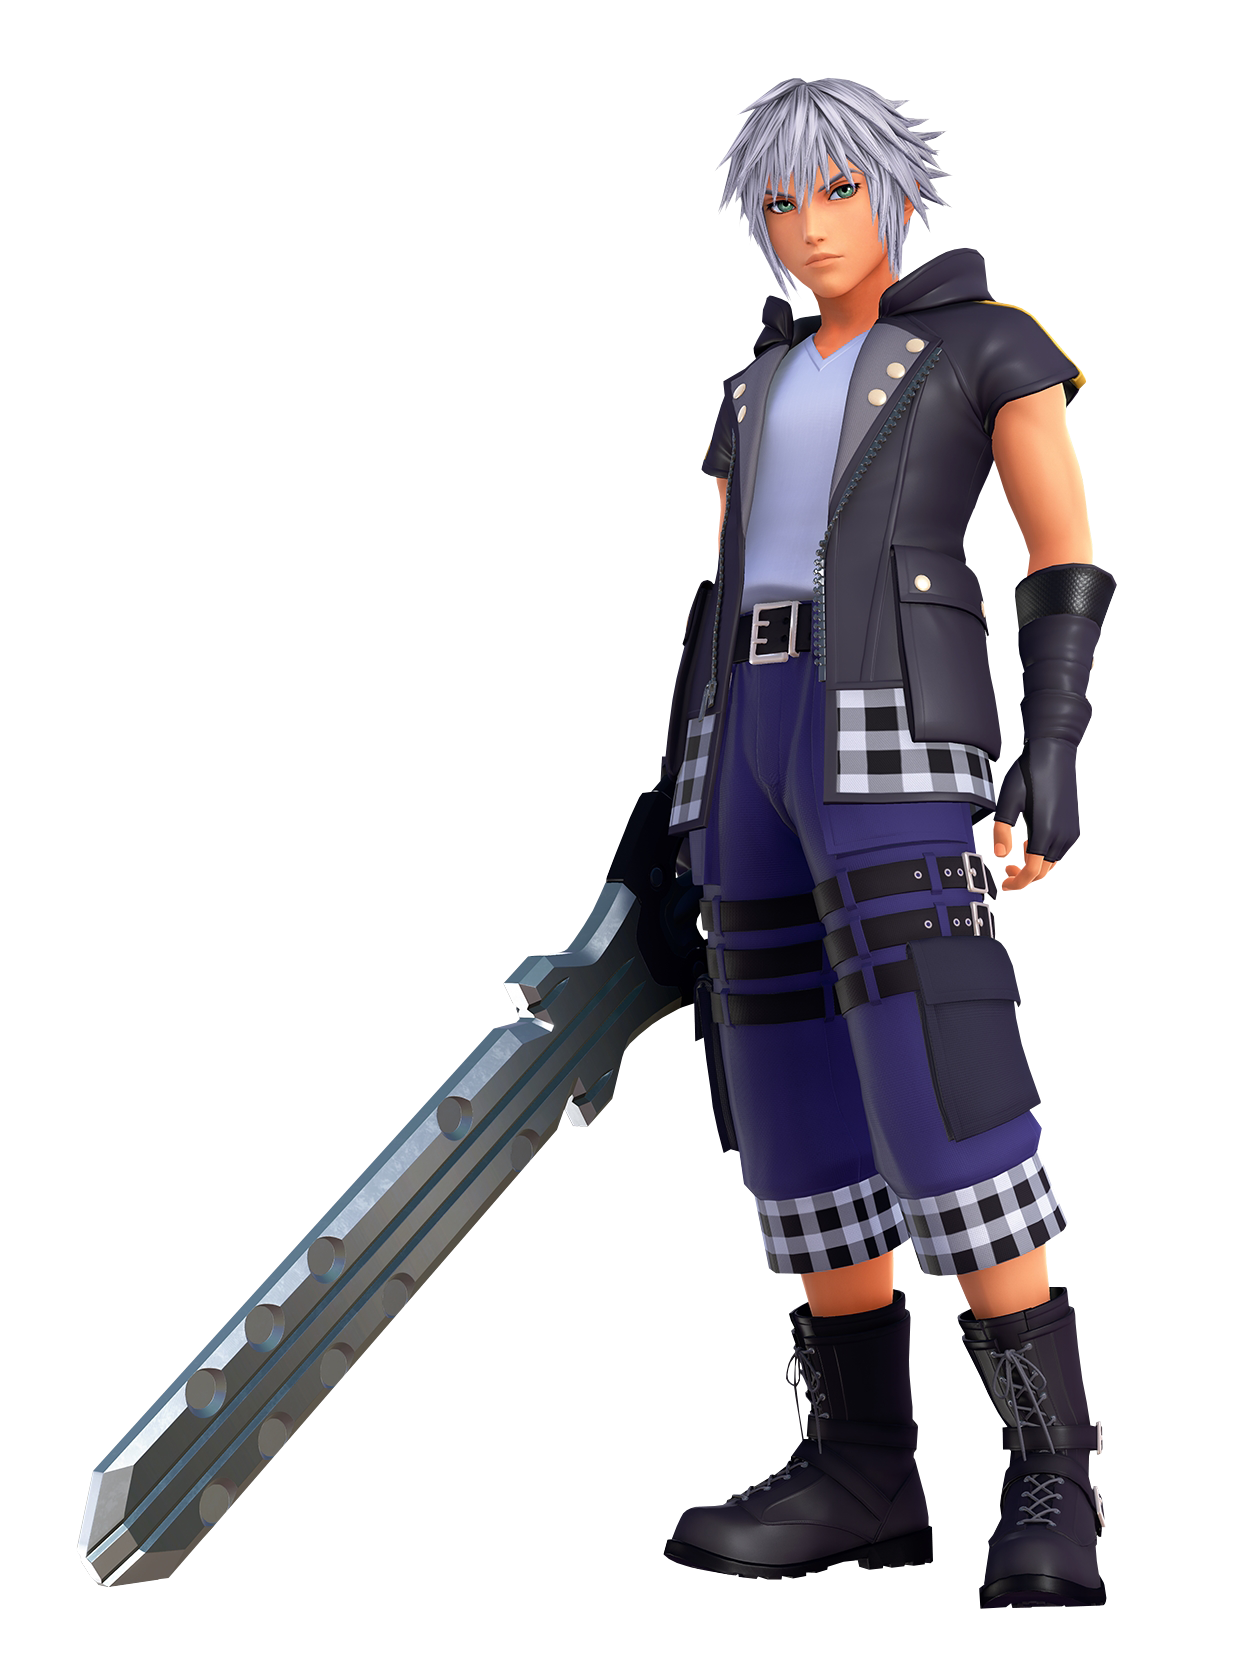 Riku | Kingdom Hearts Wiki | FANDOM powered by Wikia